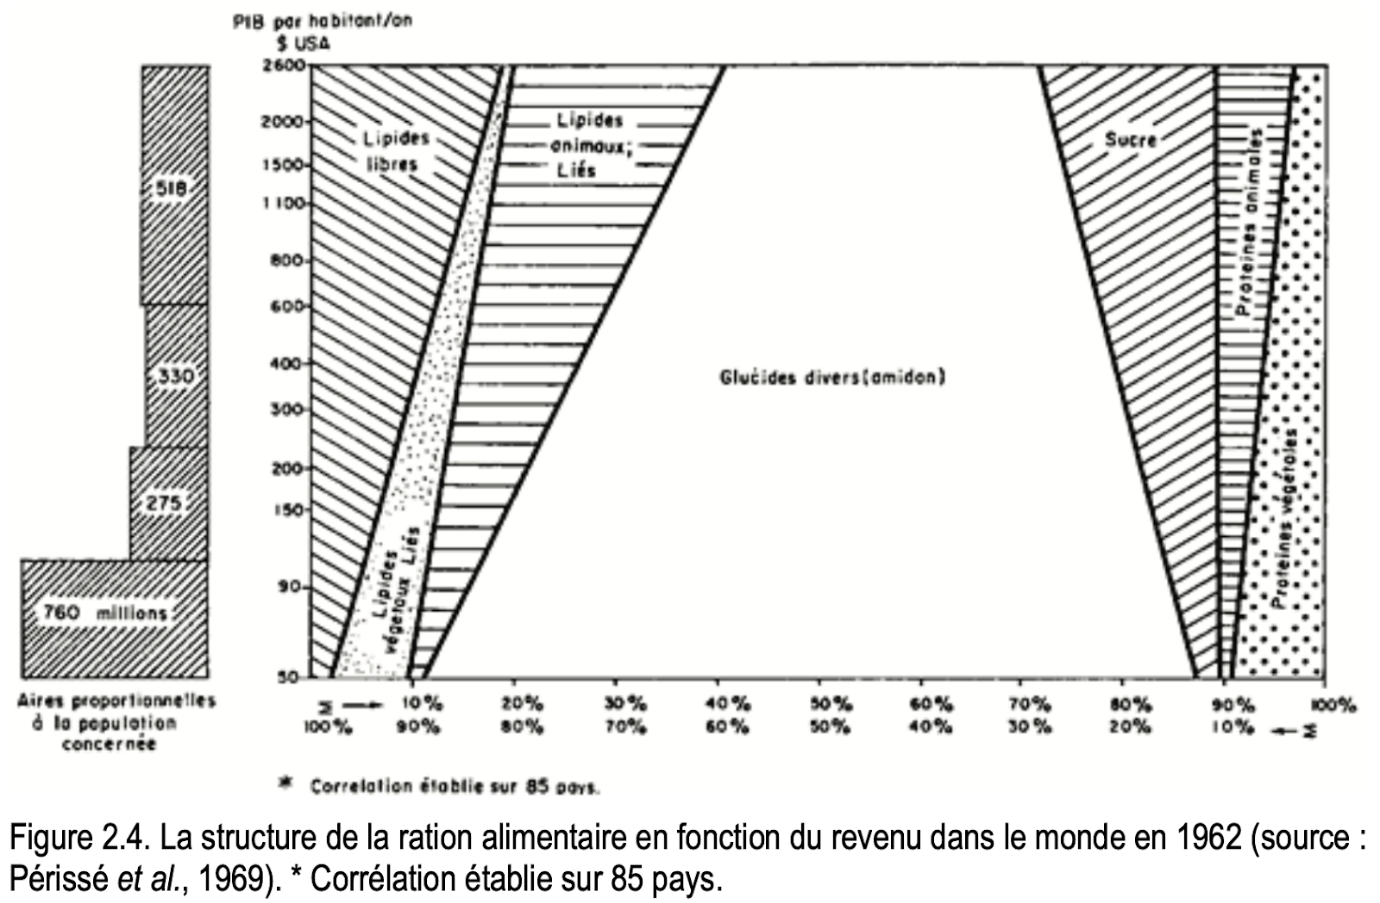 La structure de la ration alimentaire en fonction du revenu dans le monde en 1962